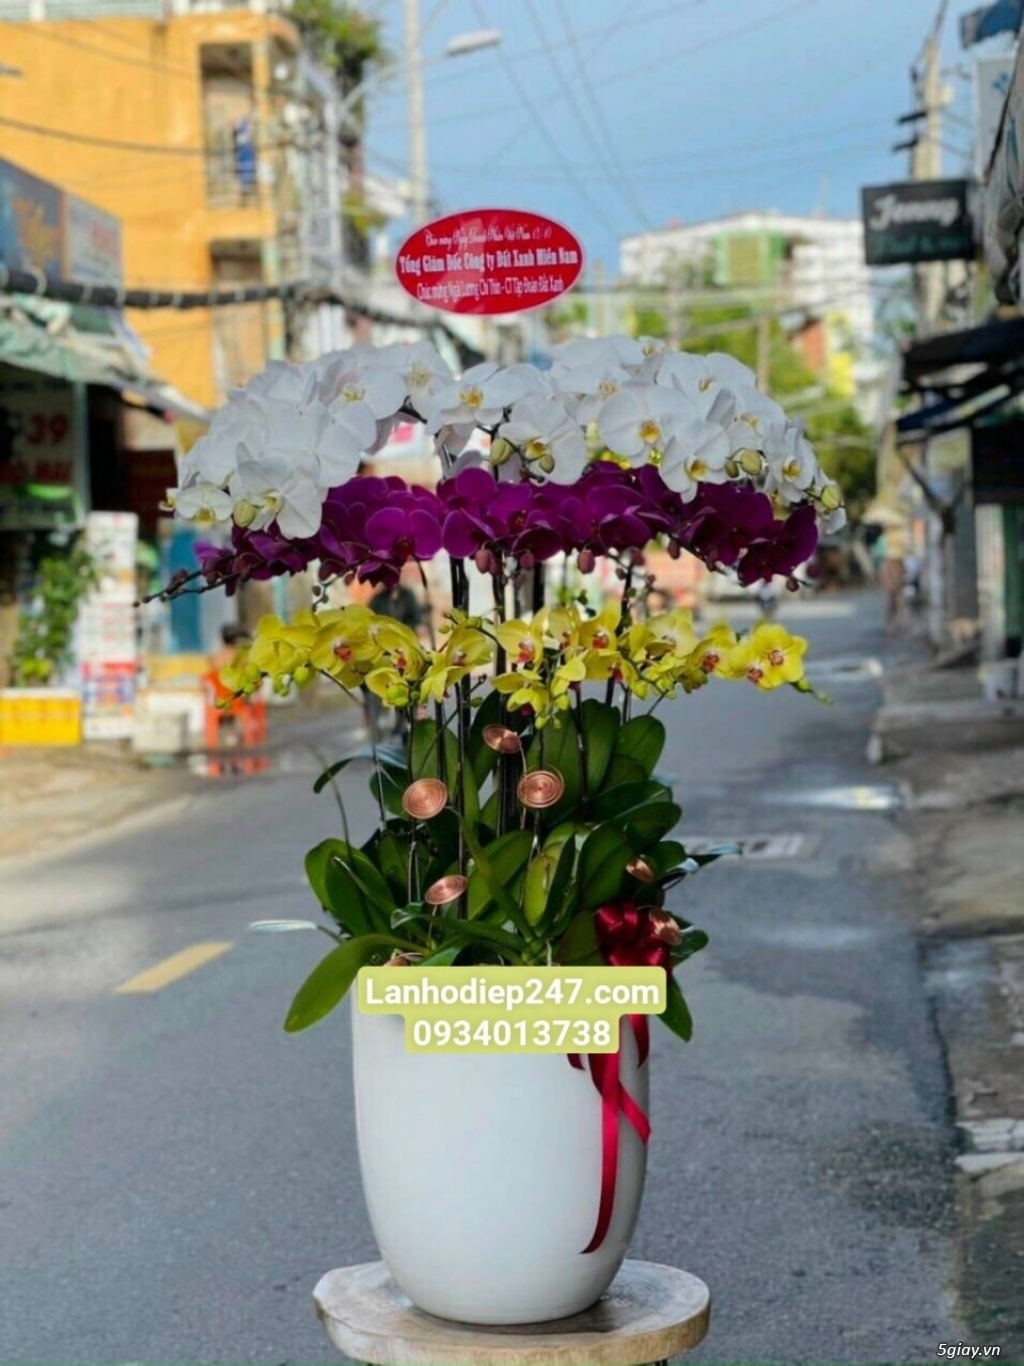 Shop hoa tươi lan hồ điệp quận Tân Bình tphcm 0934013738 - 2